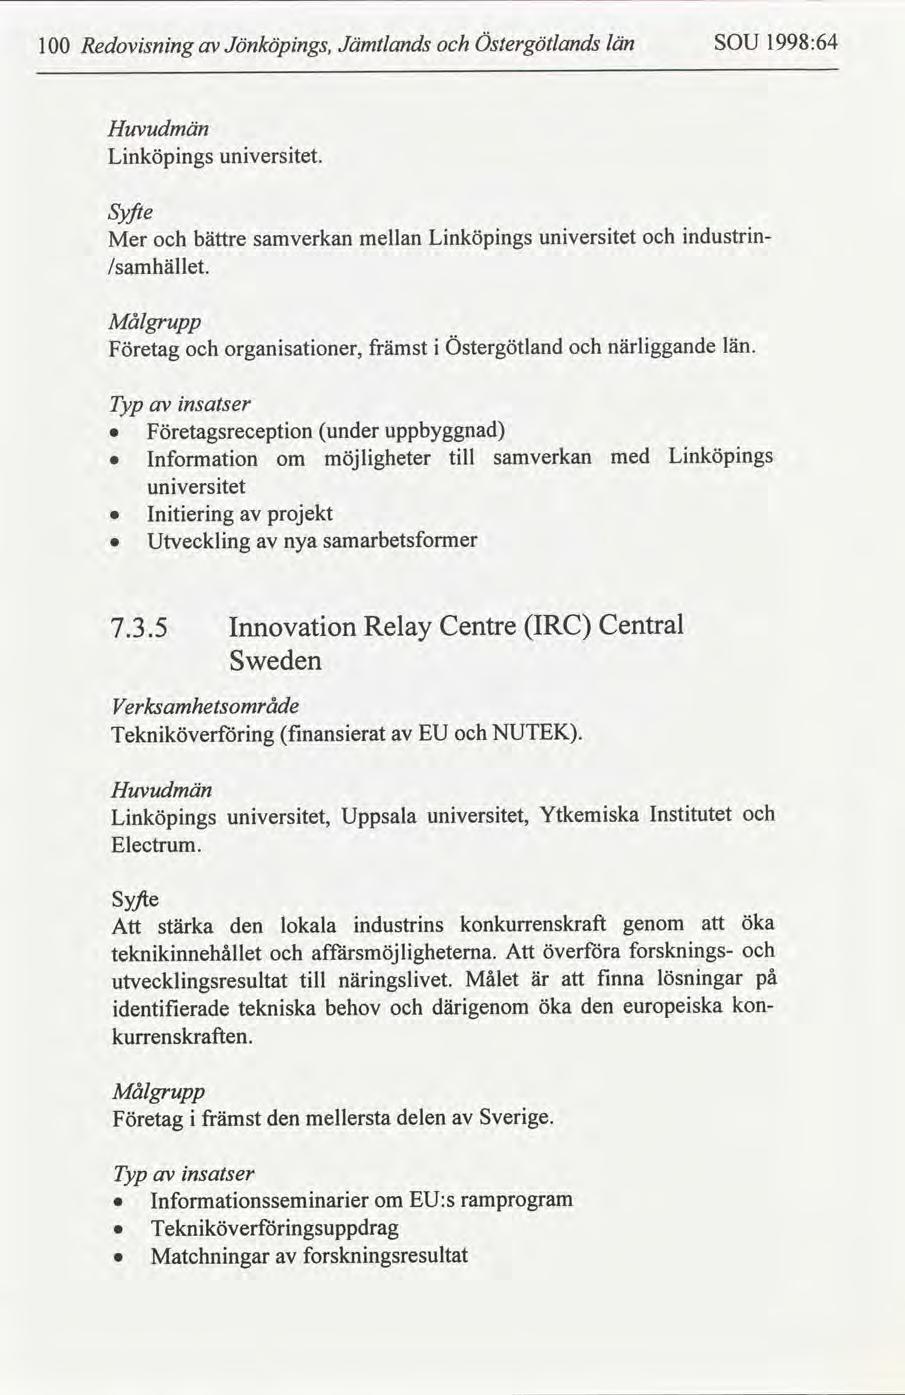 Östergötlands 1998:64 län SOU Jämtlands Jönköpngs, Redovsnng 1 Huvudmän unverstet. Lnköpngs Syfte ndustrn unverstet Lnköpngs mellan samverkan bättre Mer /samhället.